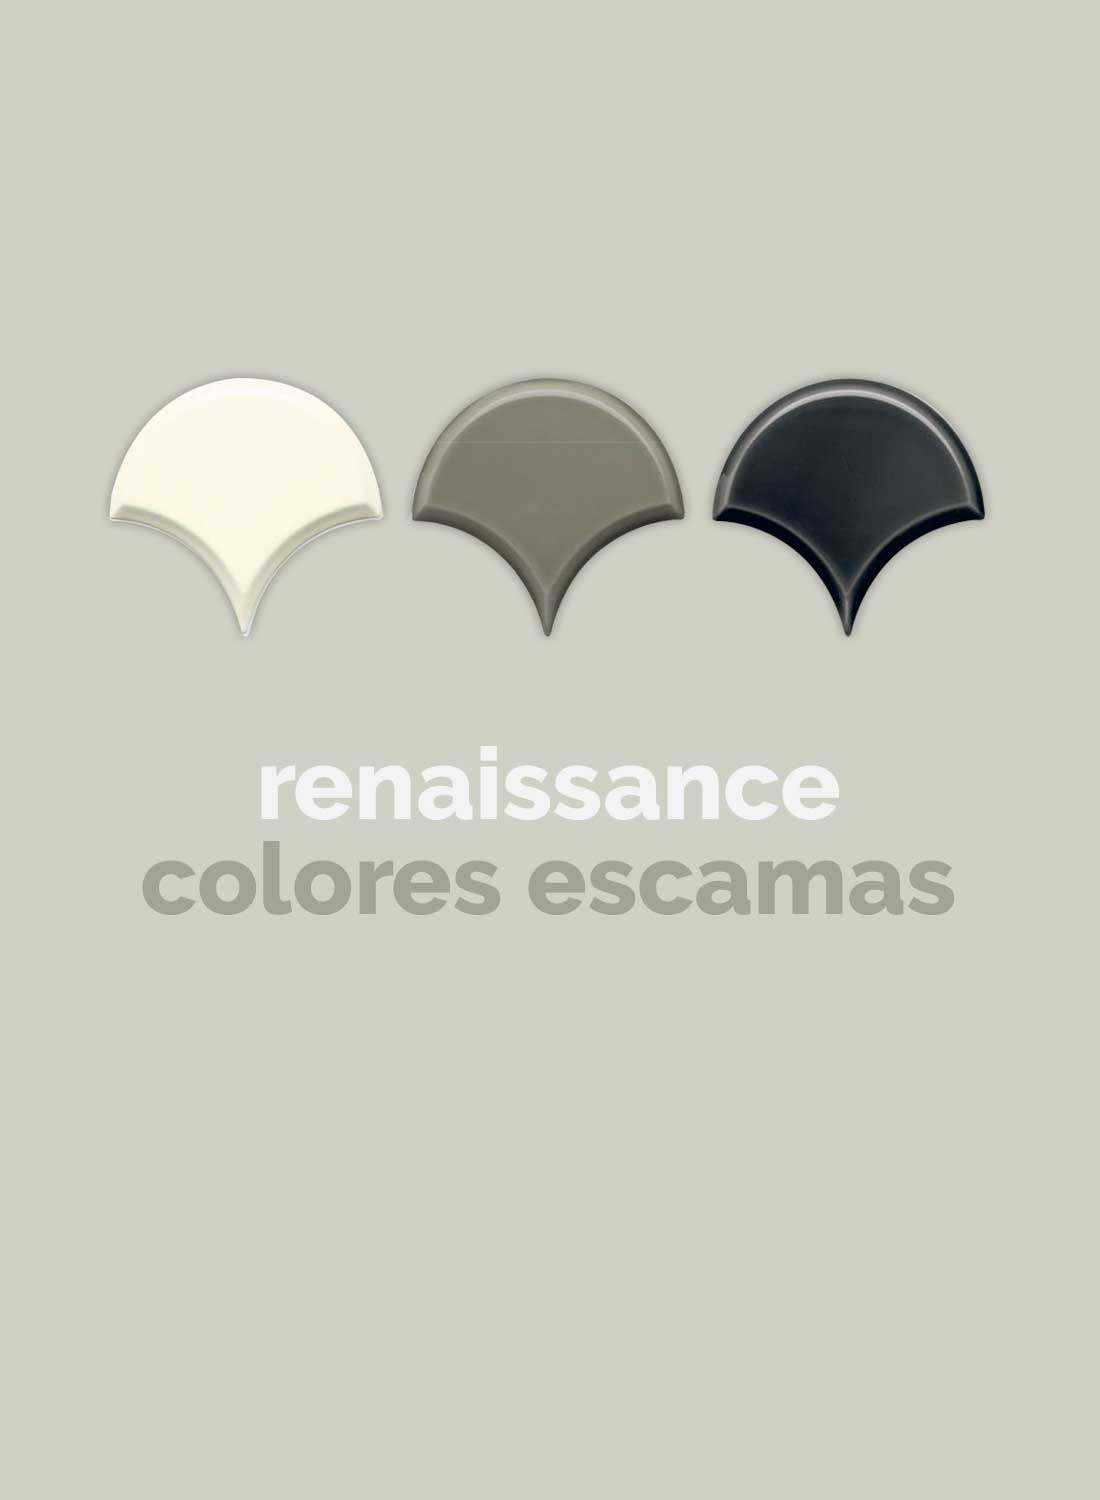 adex-renaissance-colores-escamas